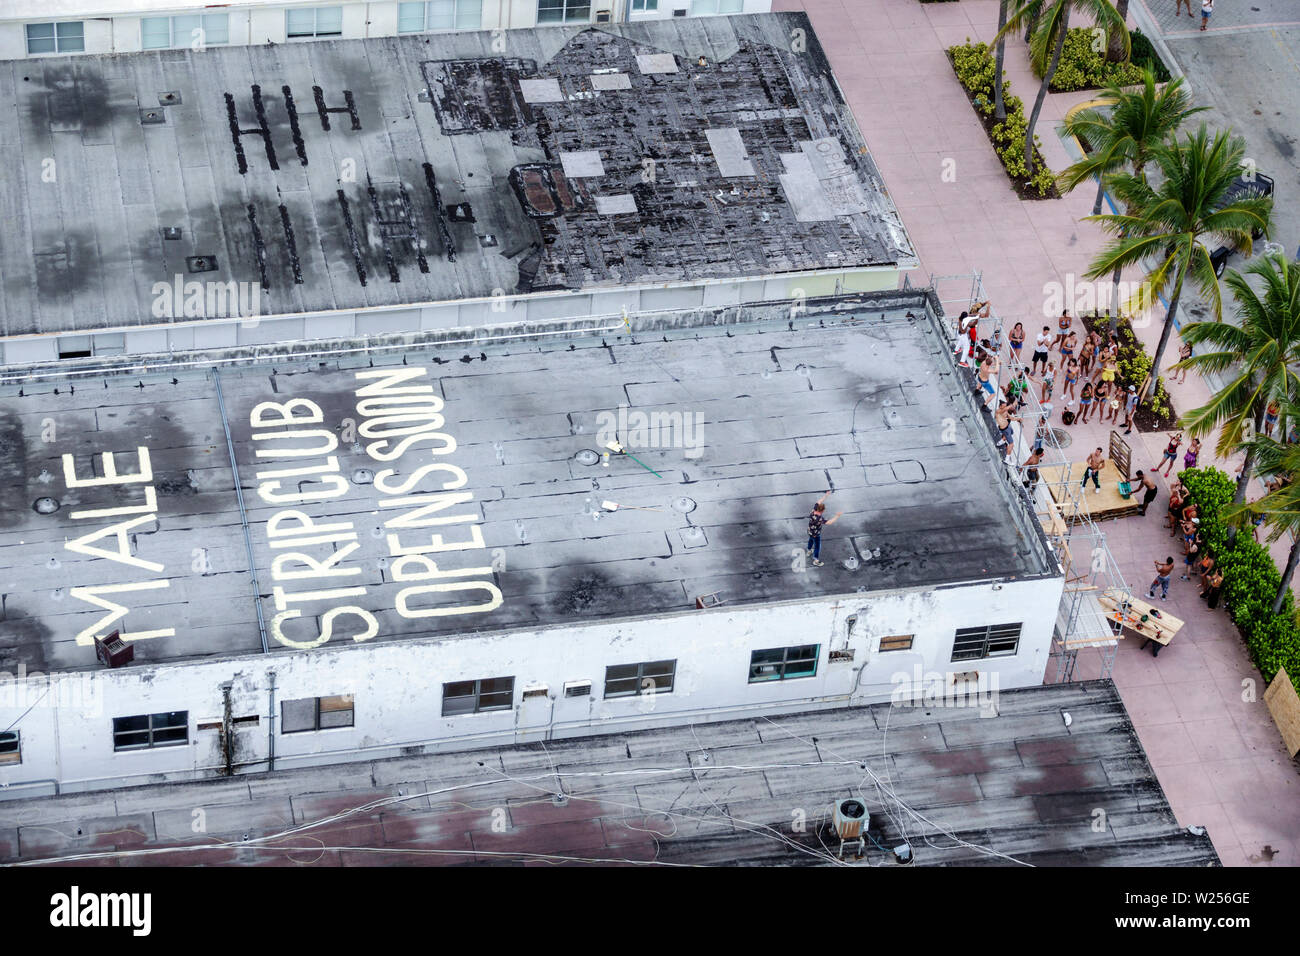 Miami Beach Florida, North Beach, Ocean Terrace, le club de strip ouvert bientôt, tournage de film, équipe, danseurs, toit peint, FL190615003 Banque D'Images